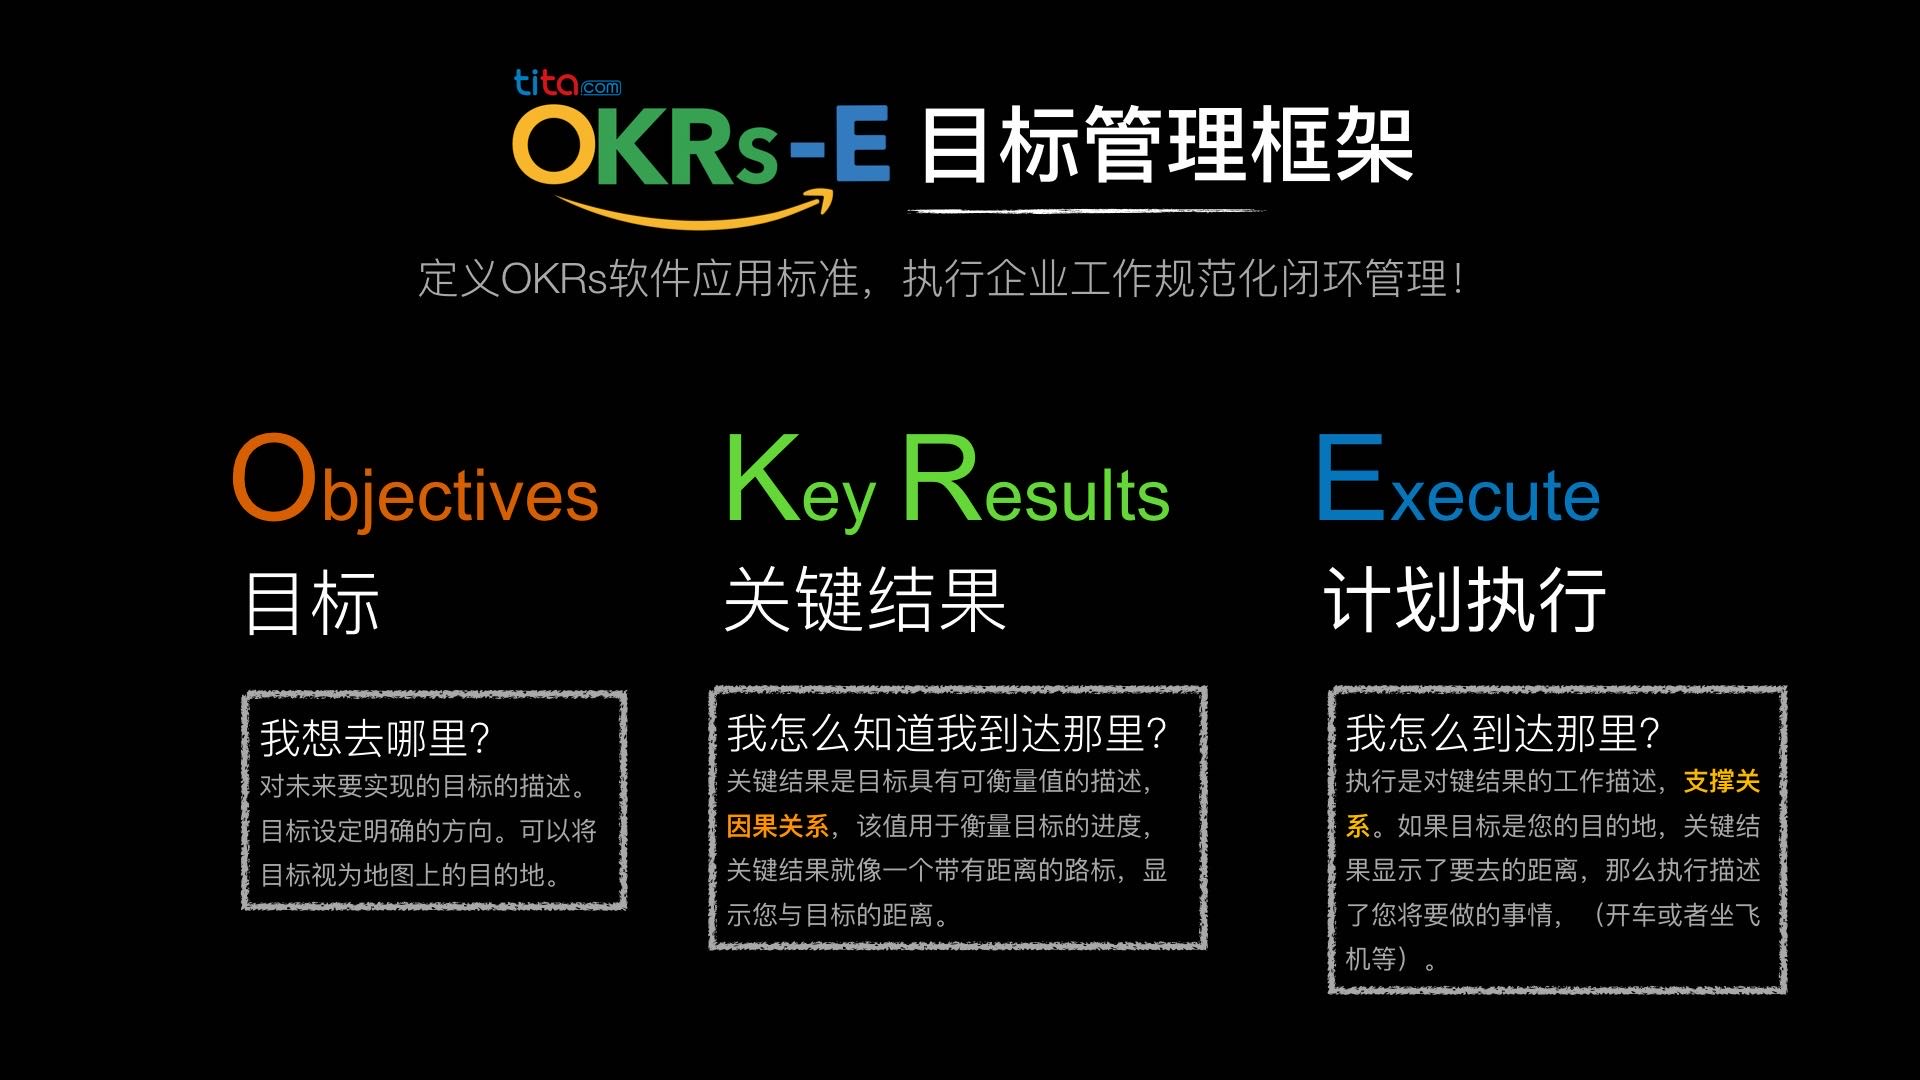 OKR - 提高成功率的终极框架